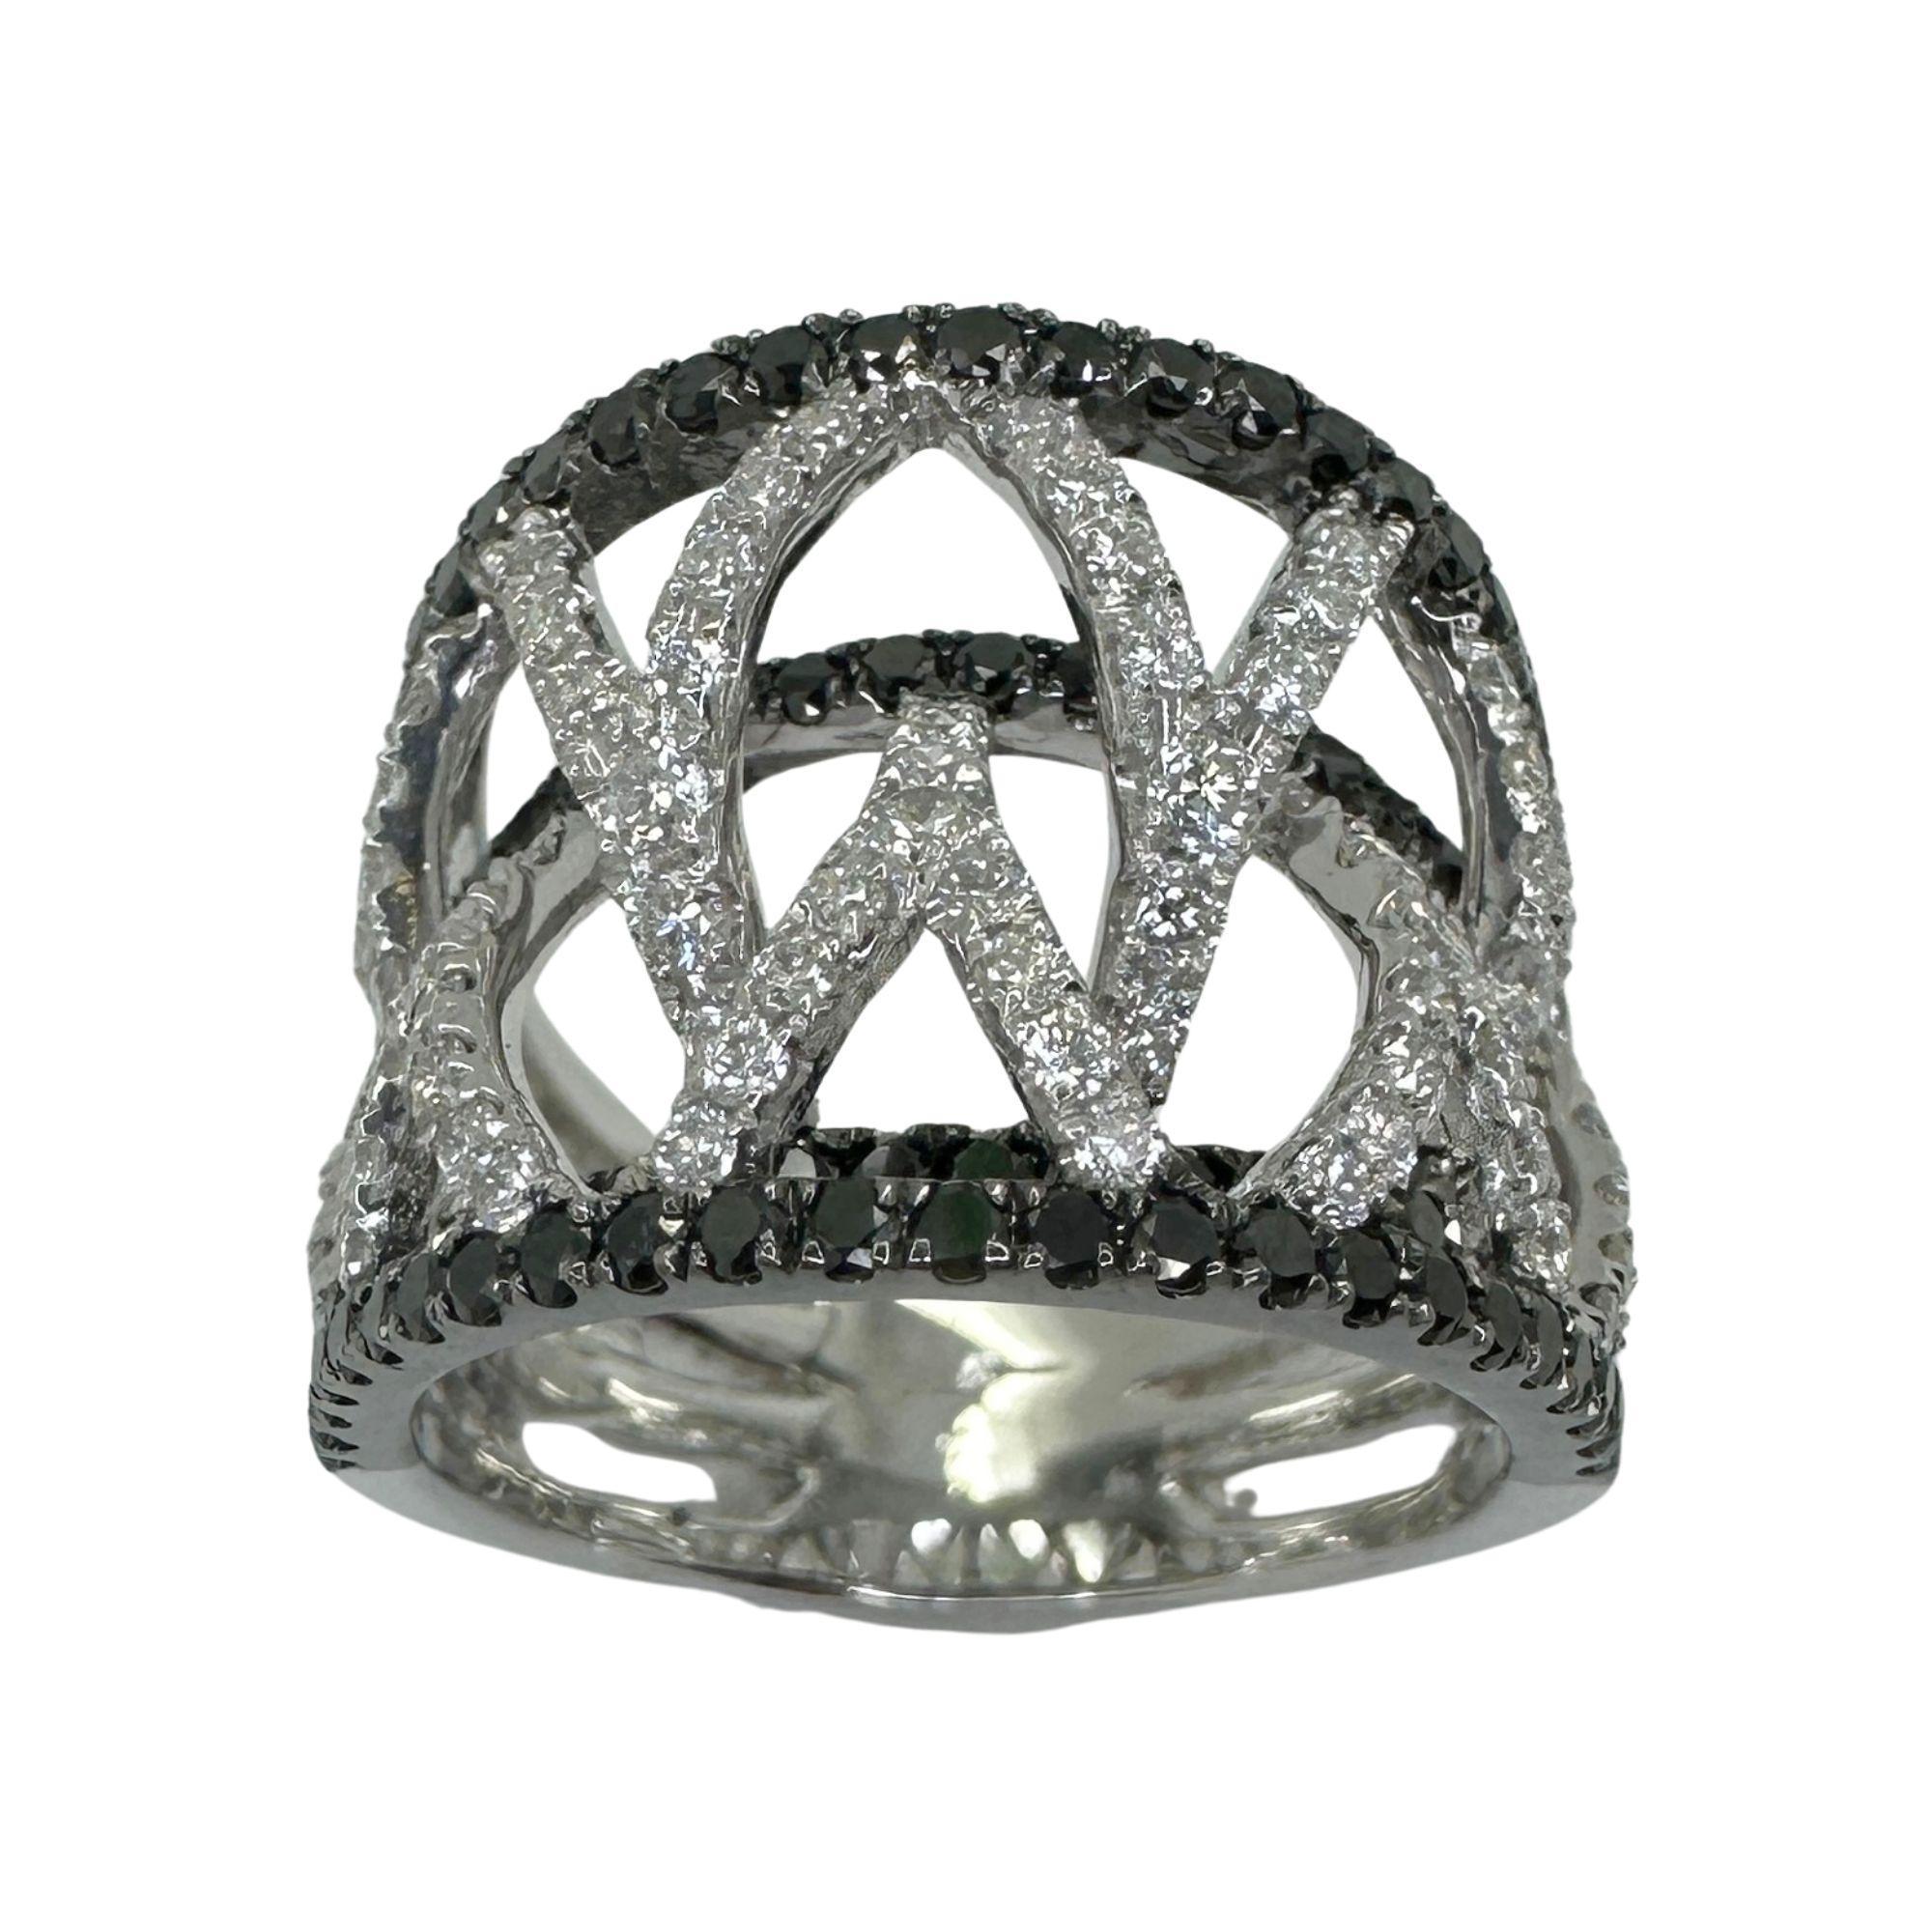 Erhöhen Sie Ihren Stil mit unserem atemberaubenden 18k Black and White Diamond Wide Band Ring. Dieser aus 18 Karat Weißgold gefertigte Ring hat ein Gesamtgewicht von 2,04 Karat aus schwarzen und weißen Diamanten. Das schlanke Design und die Größe